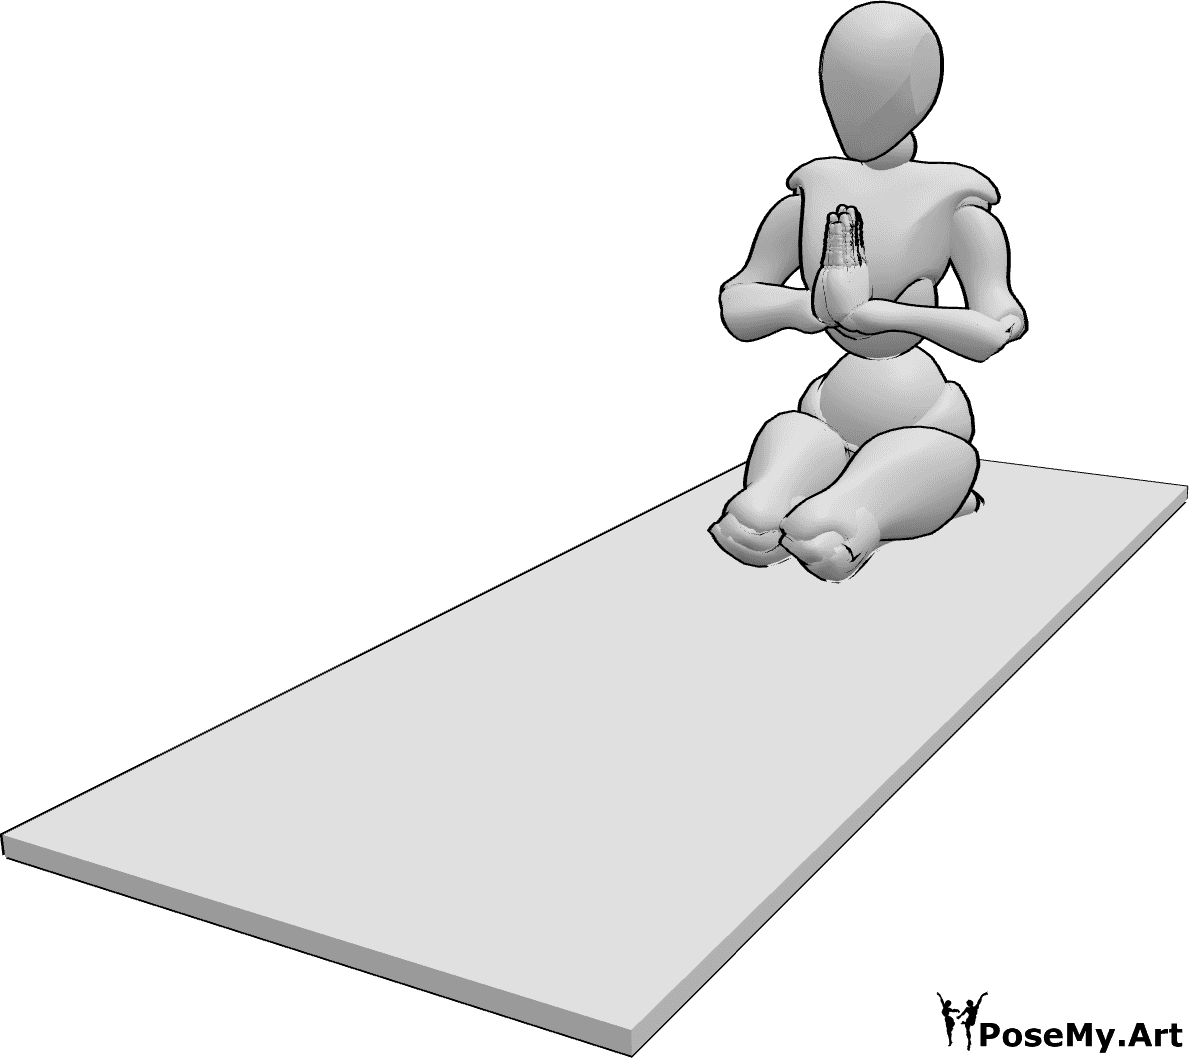 Riferimento alle pose- Posizione yoga femminile - La donna esegue una posizione yoga